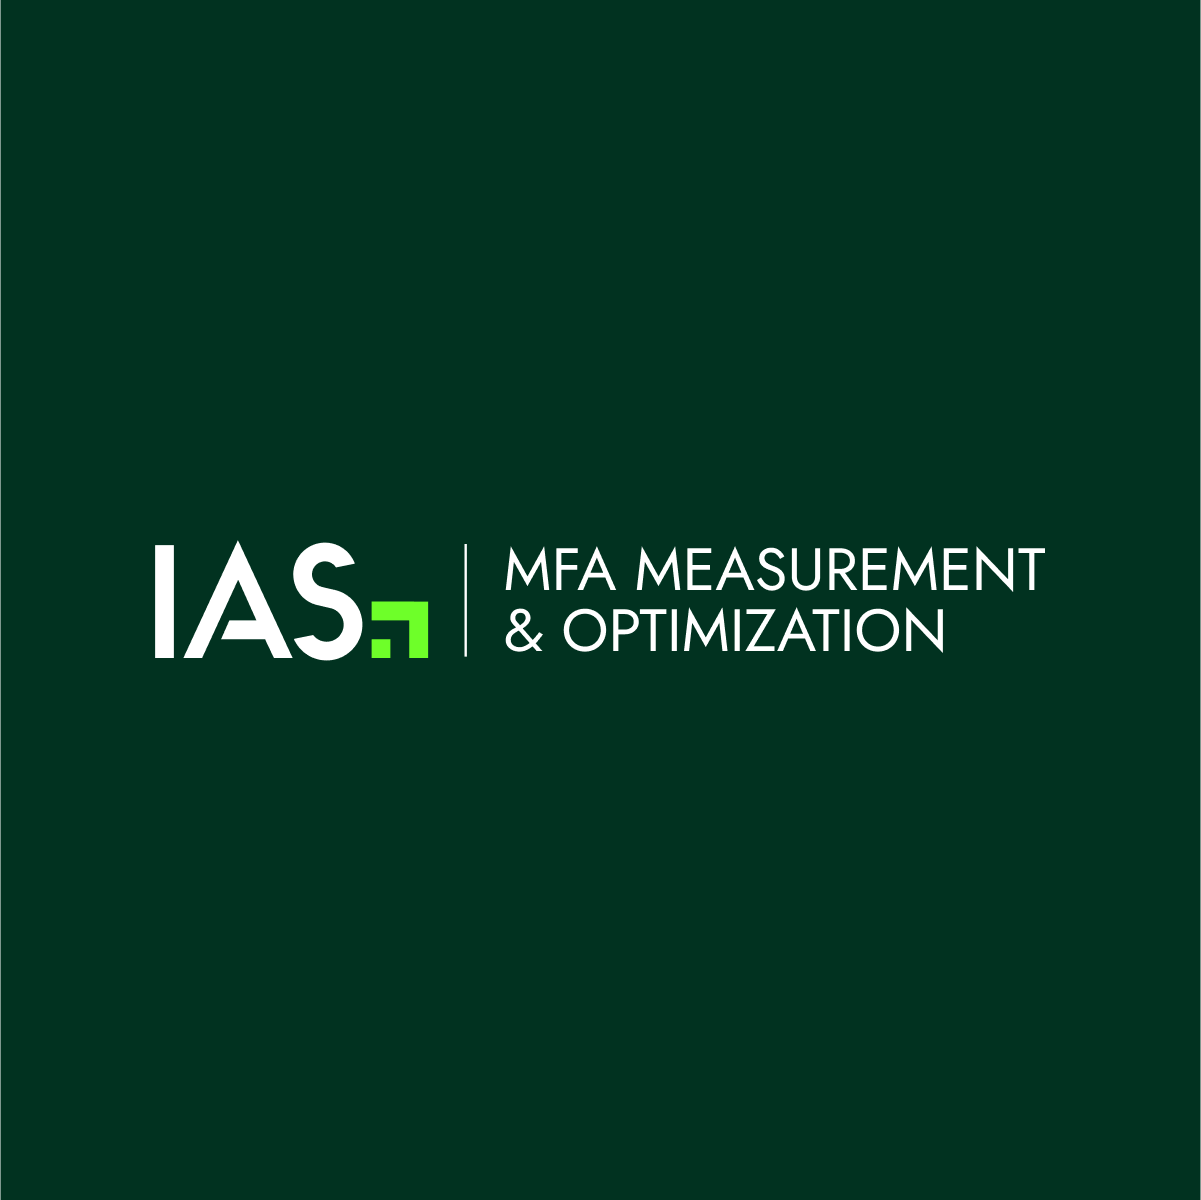 IAS amplía su solución de medición y optimización “Made for Advertising” (MFA) basada en IA con la primera innovación del sector en detección y prevención de la saturación publicitaria